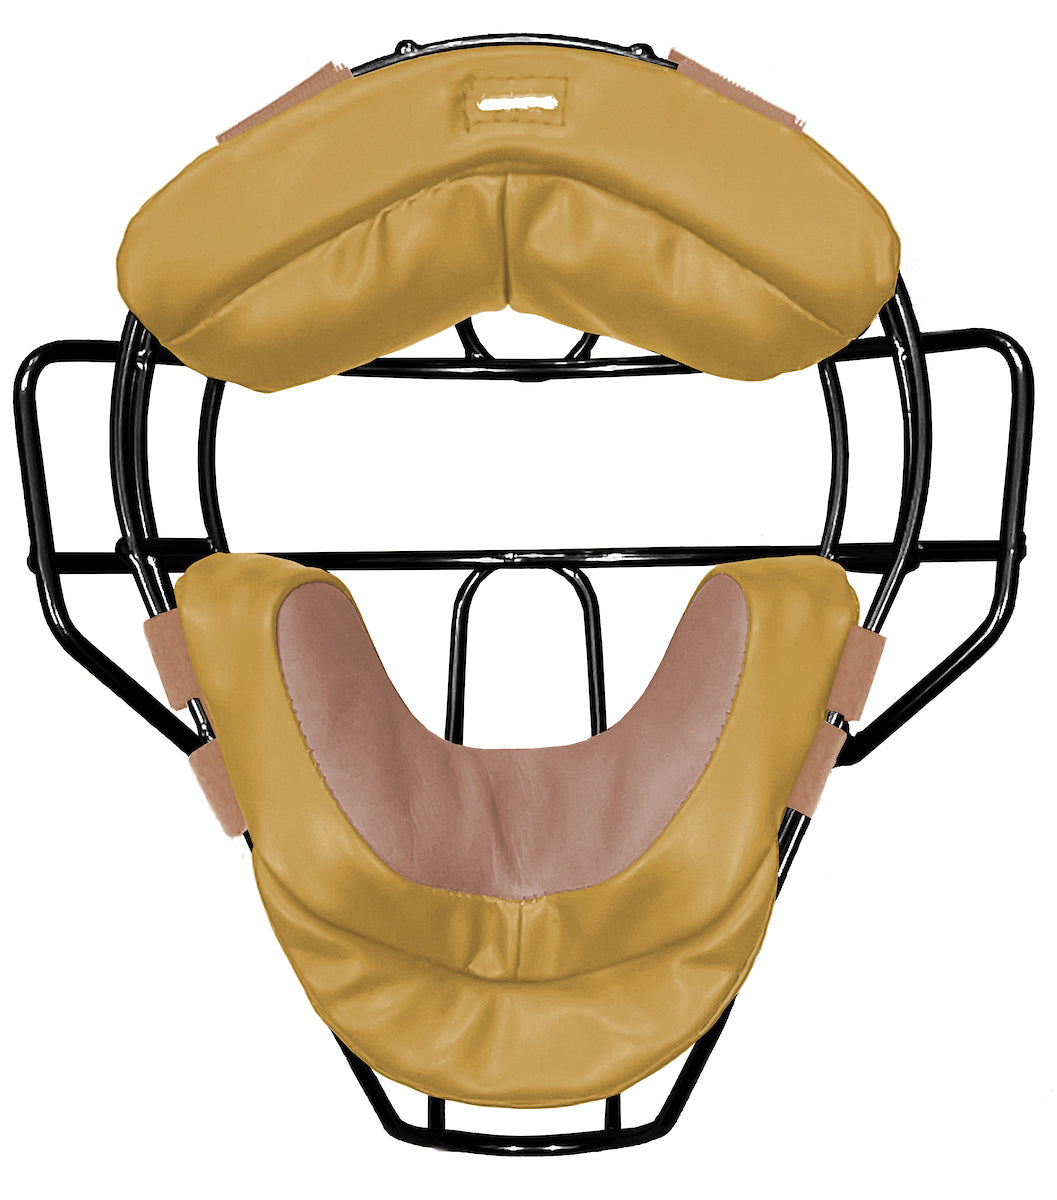 Force3 Traditional Defender Mask